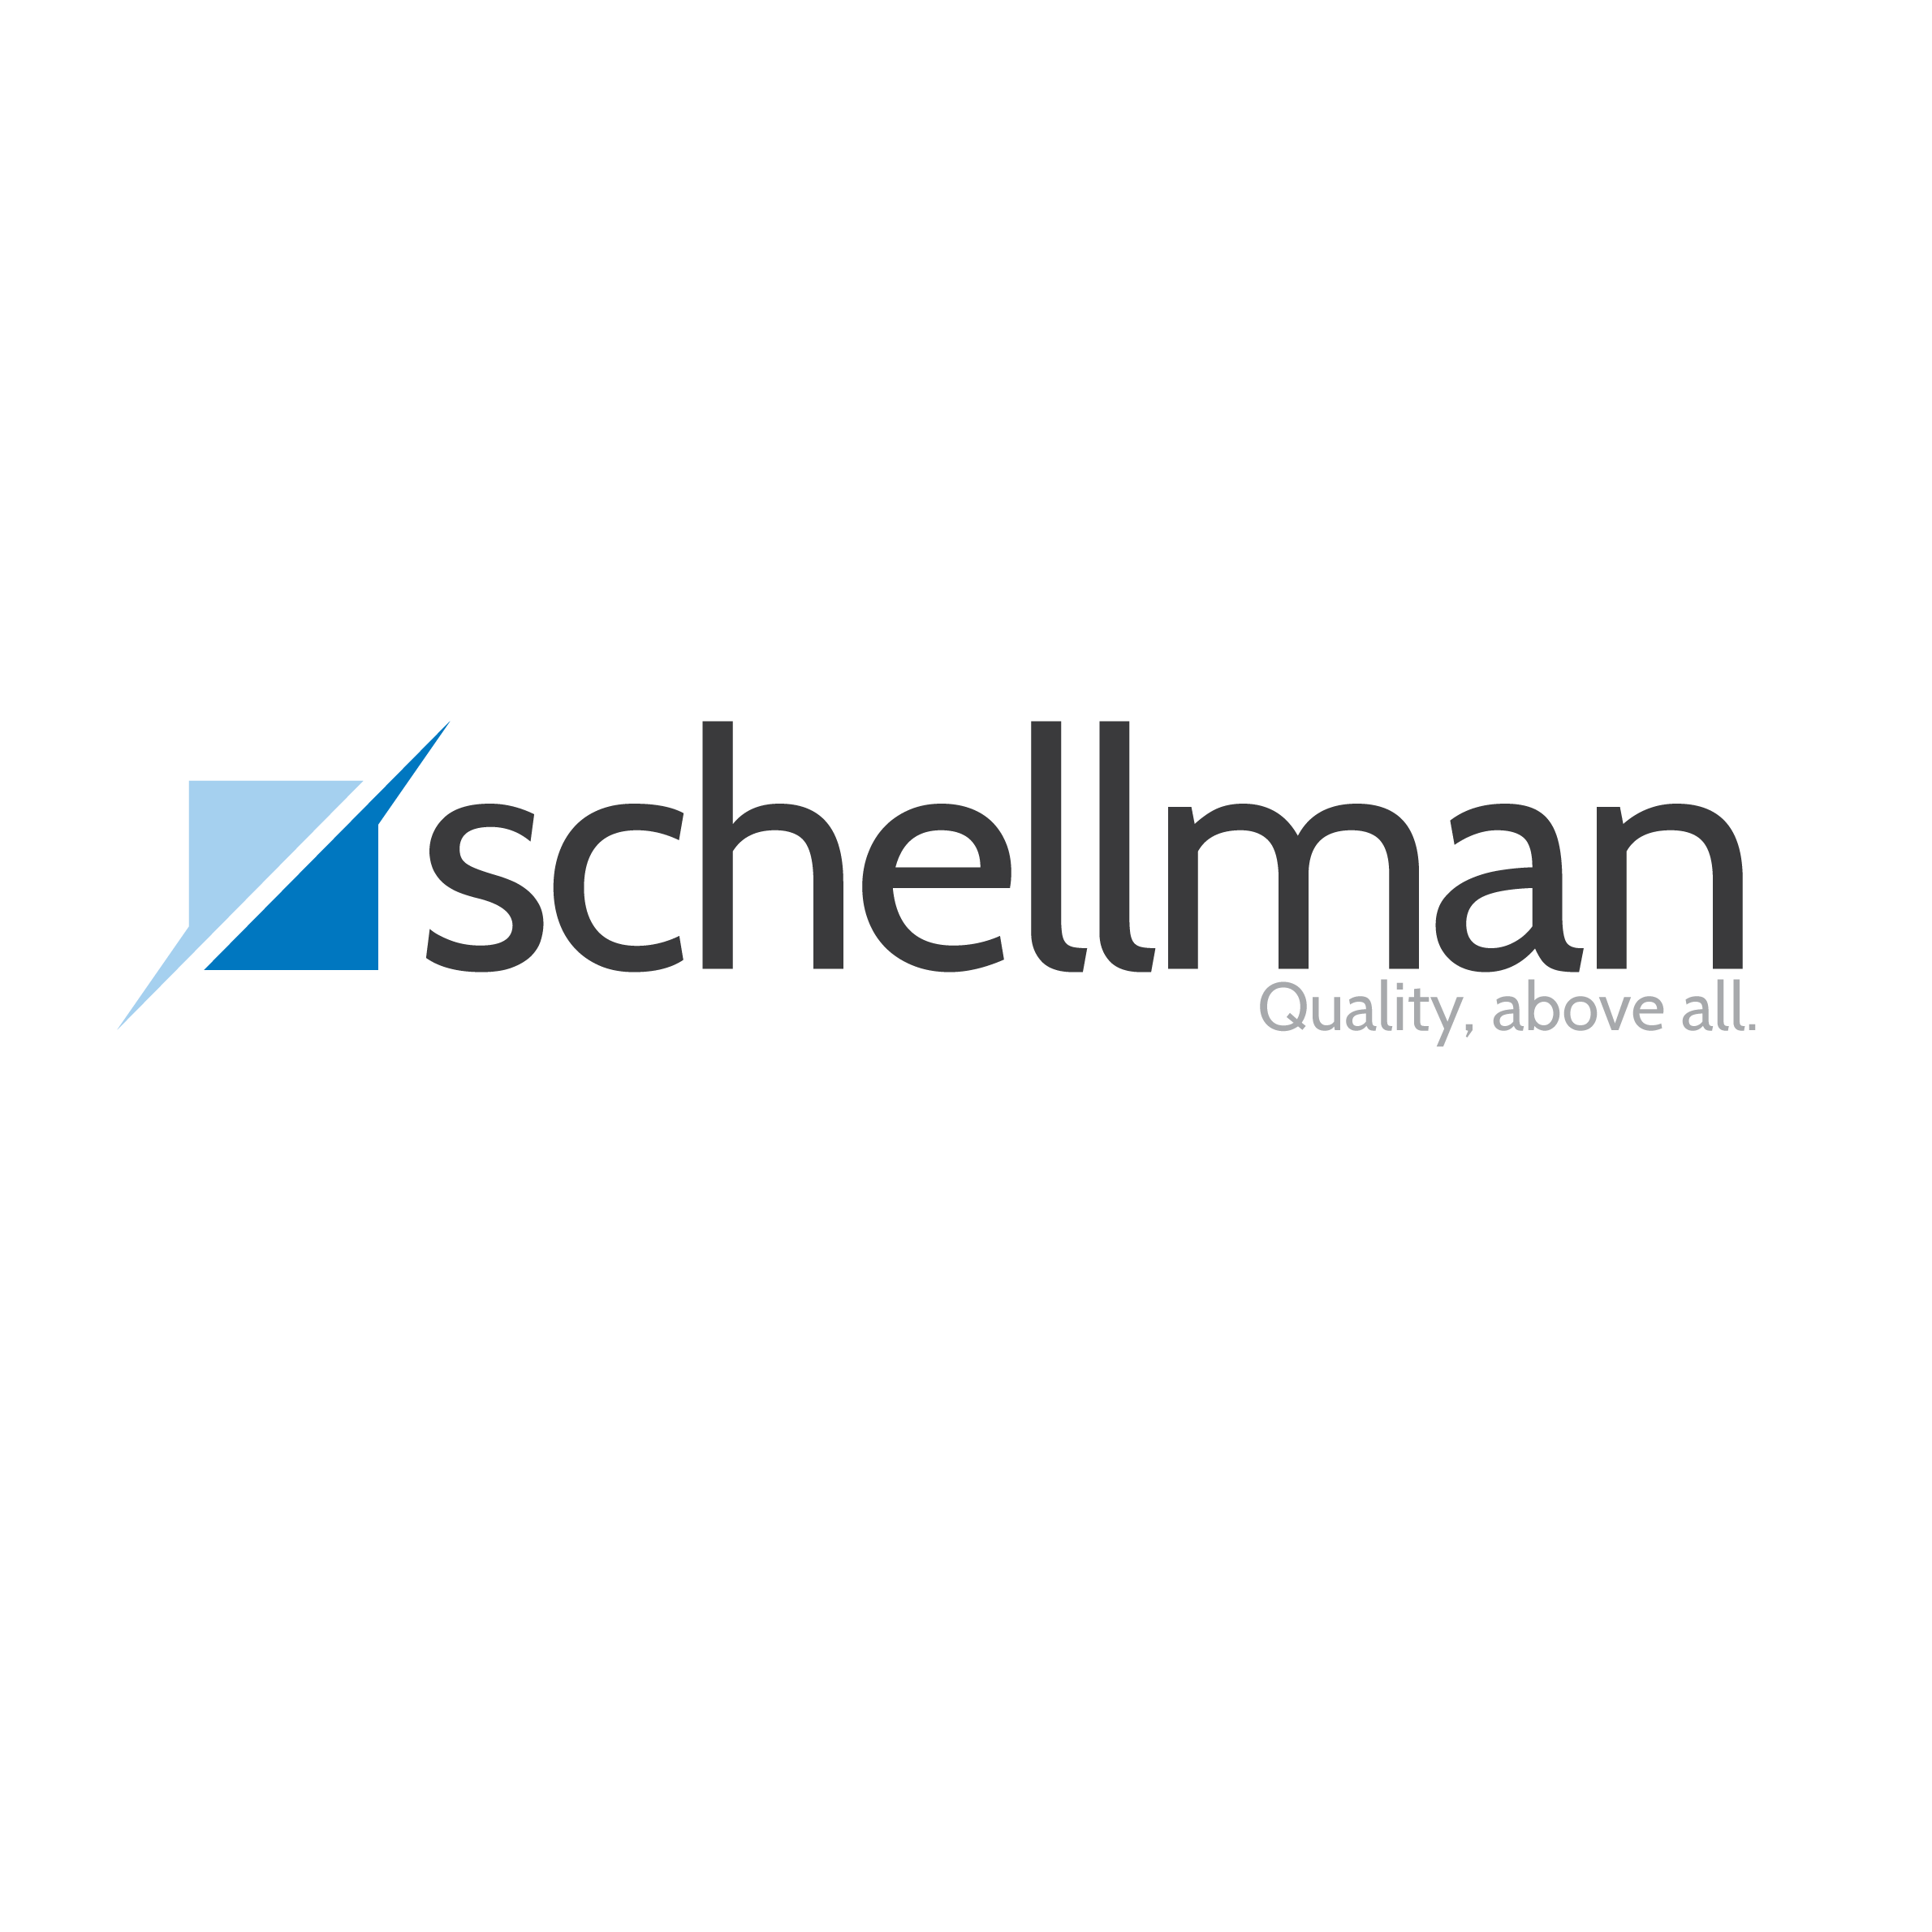 Schellman